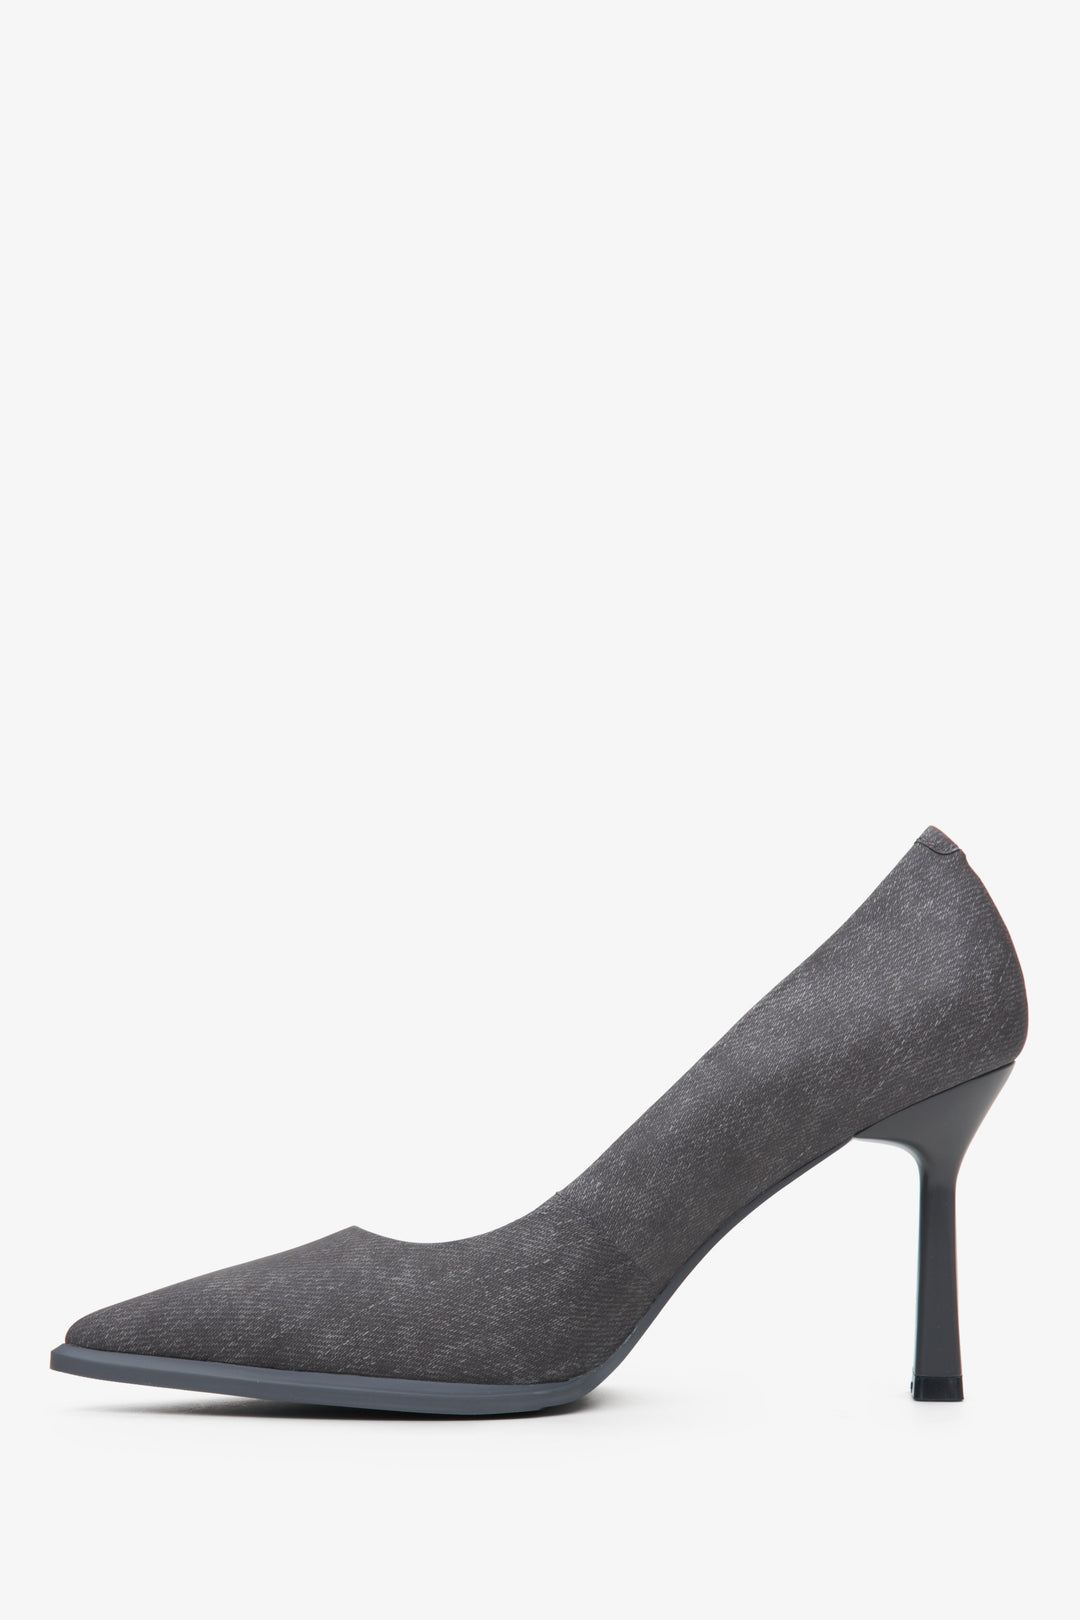 Women's dark grey denim pumps by Estro - shoe profile.